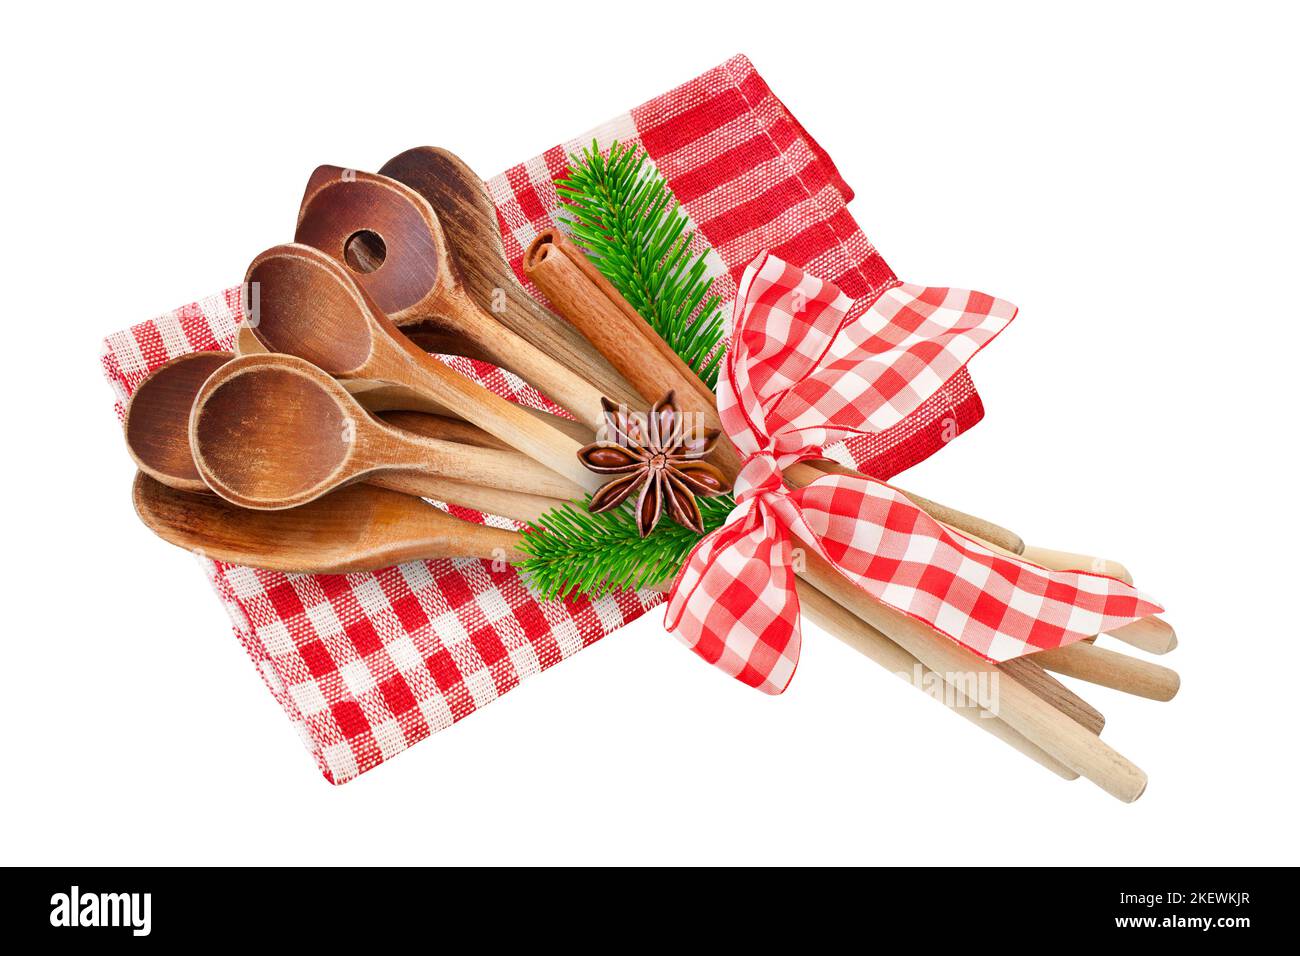 Noël et des cuillères de cuisson en bois avec cannelle, branches de sapin, anis et serviette rouge Banque D'Images